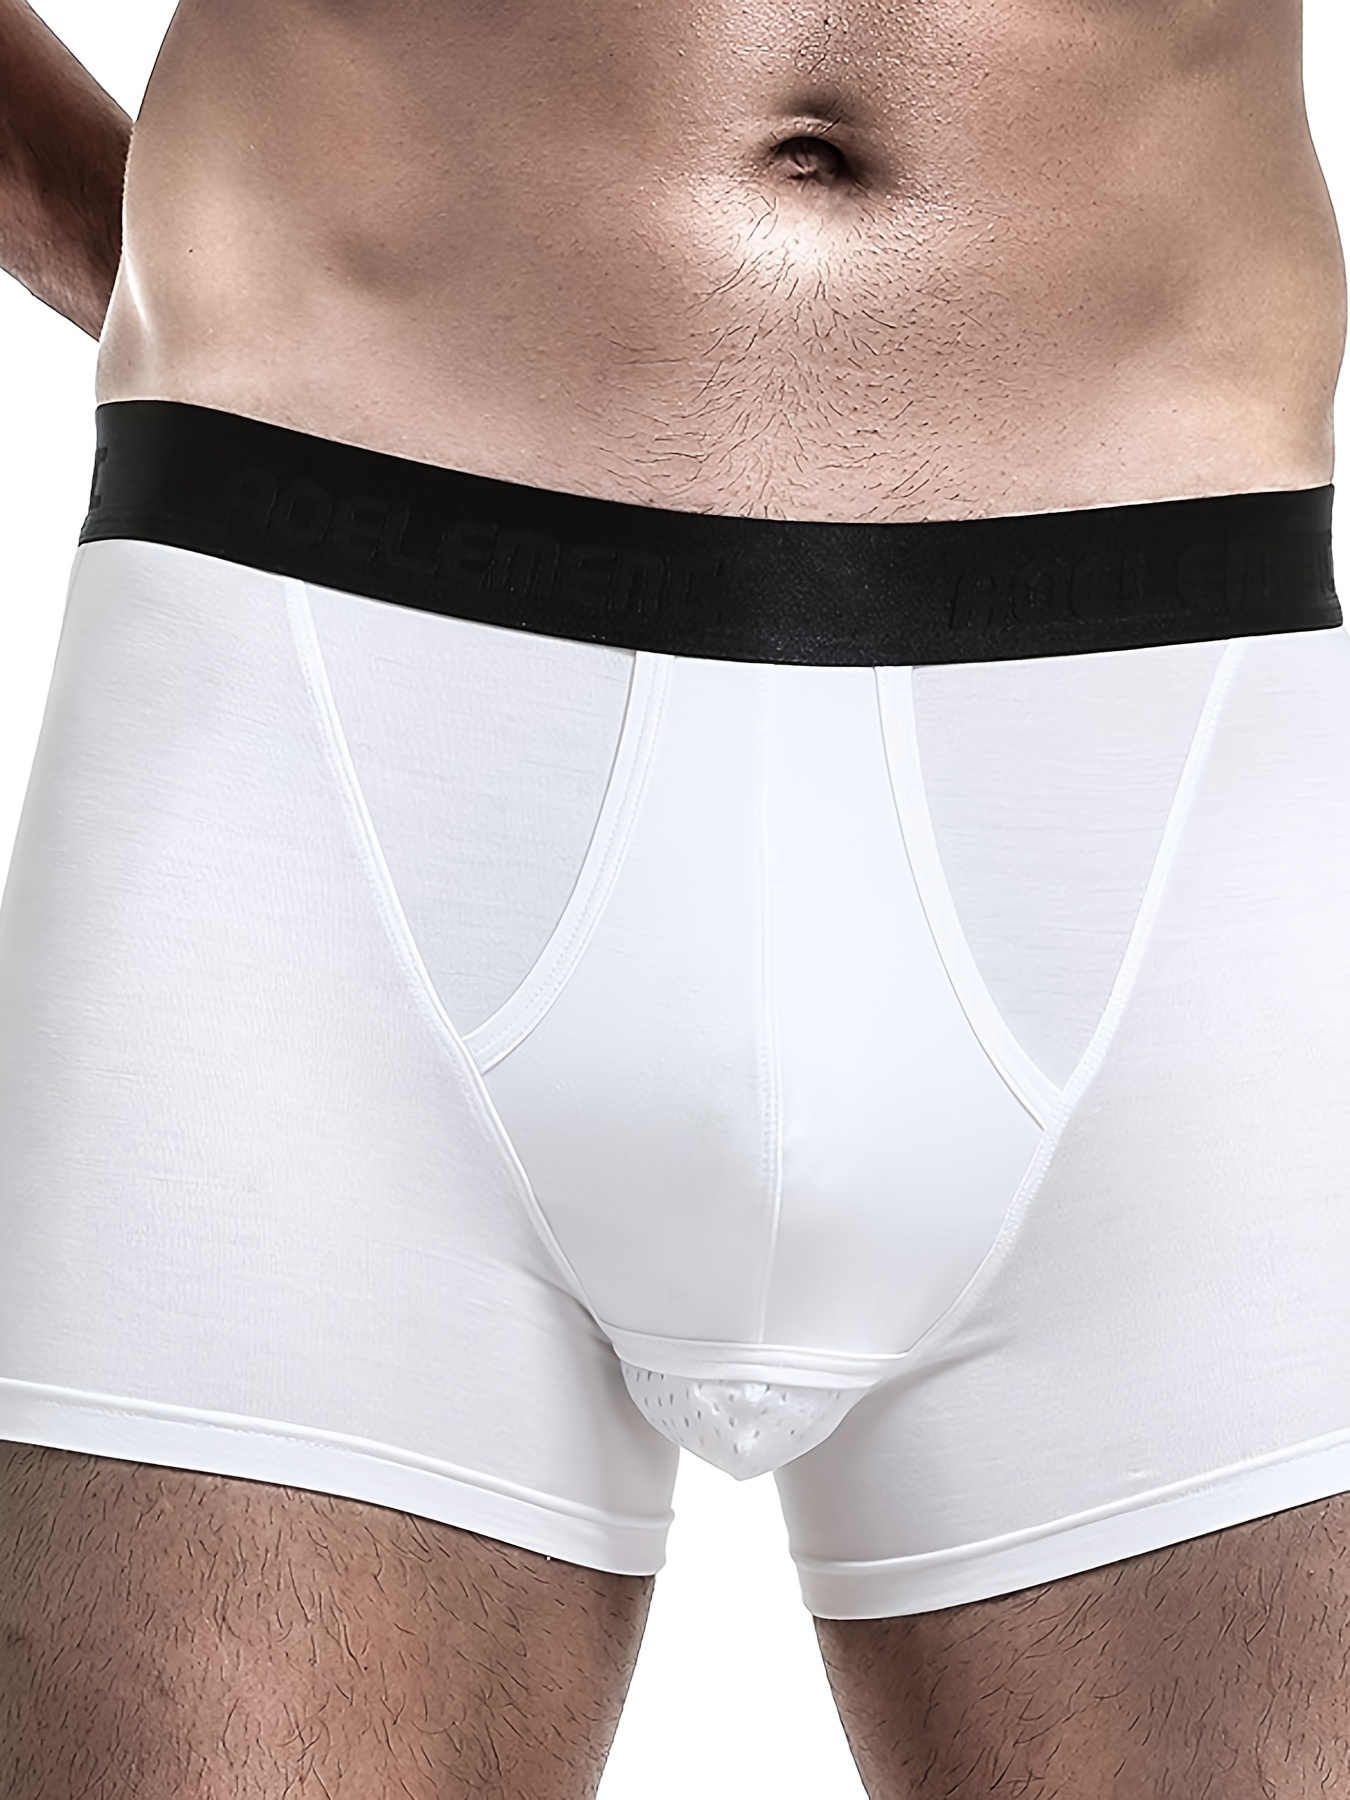 Men's Sexy Cotton Elephant Trunk Underwear Long Bulge Pouch Boxer